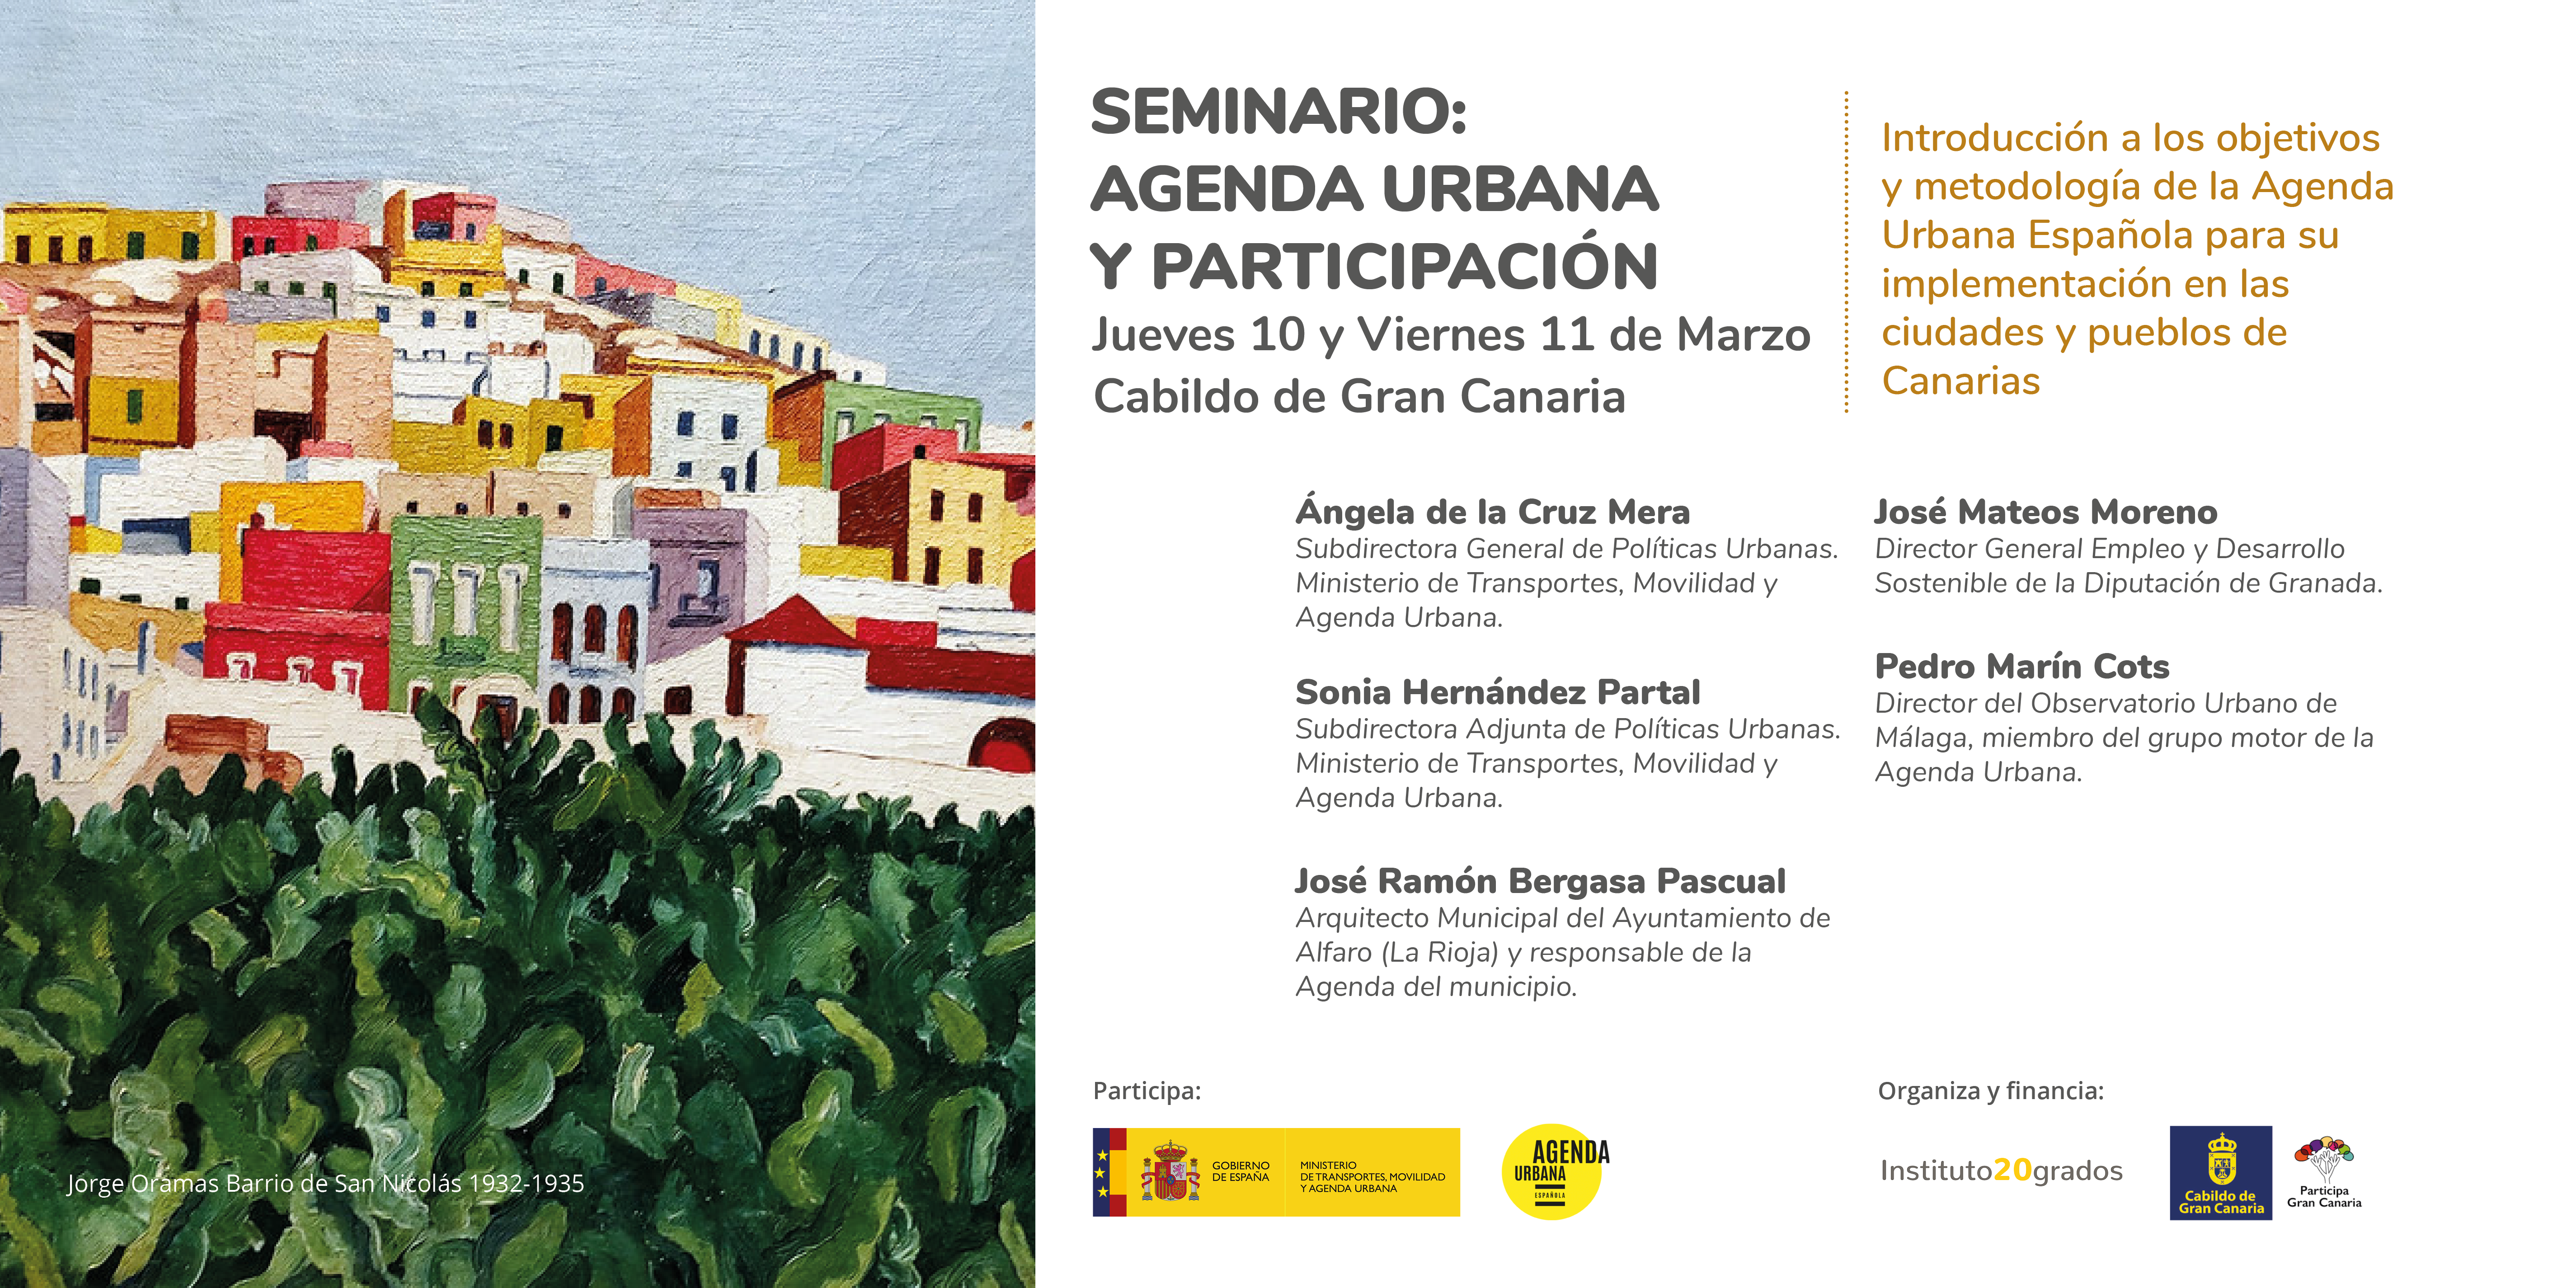 El Cabildo de Gran Canaria acoge un seminario que pone el foco en la Agenda Urbana